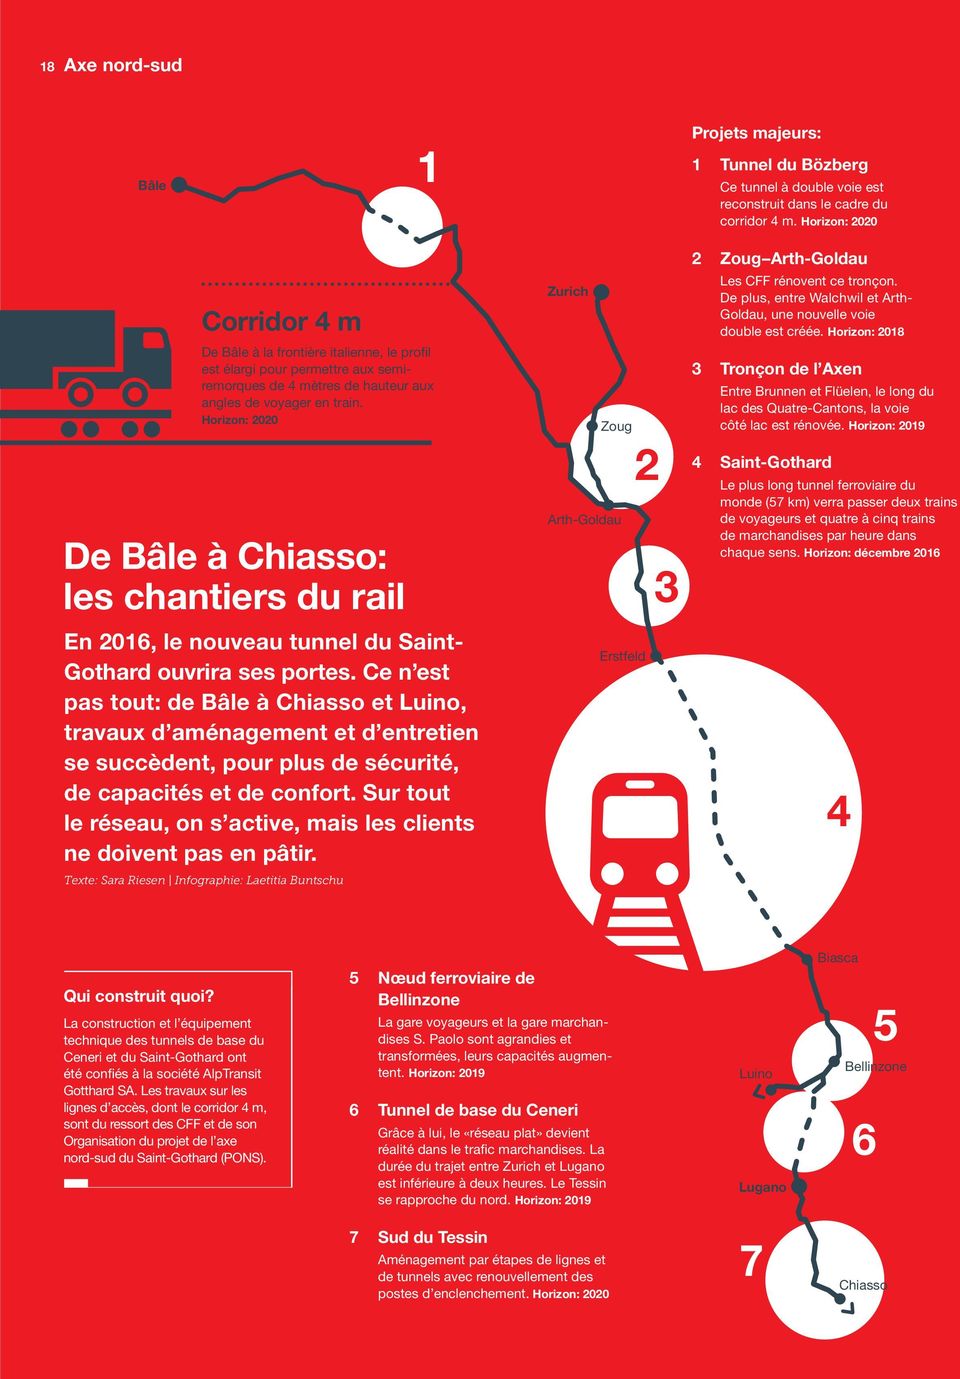 Horizon: 2020 De Bâle à Chiasso: les chantiers du rail En 2016, le nouveau tunnel du Saint- Gothard ouvrira ses portes.